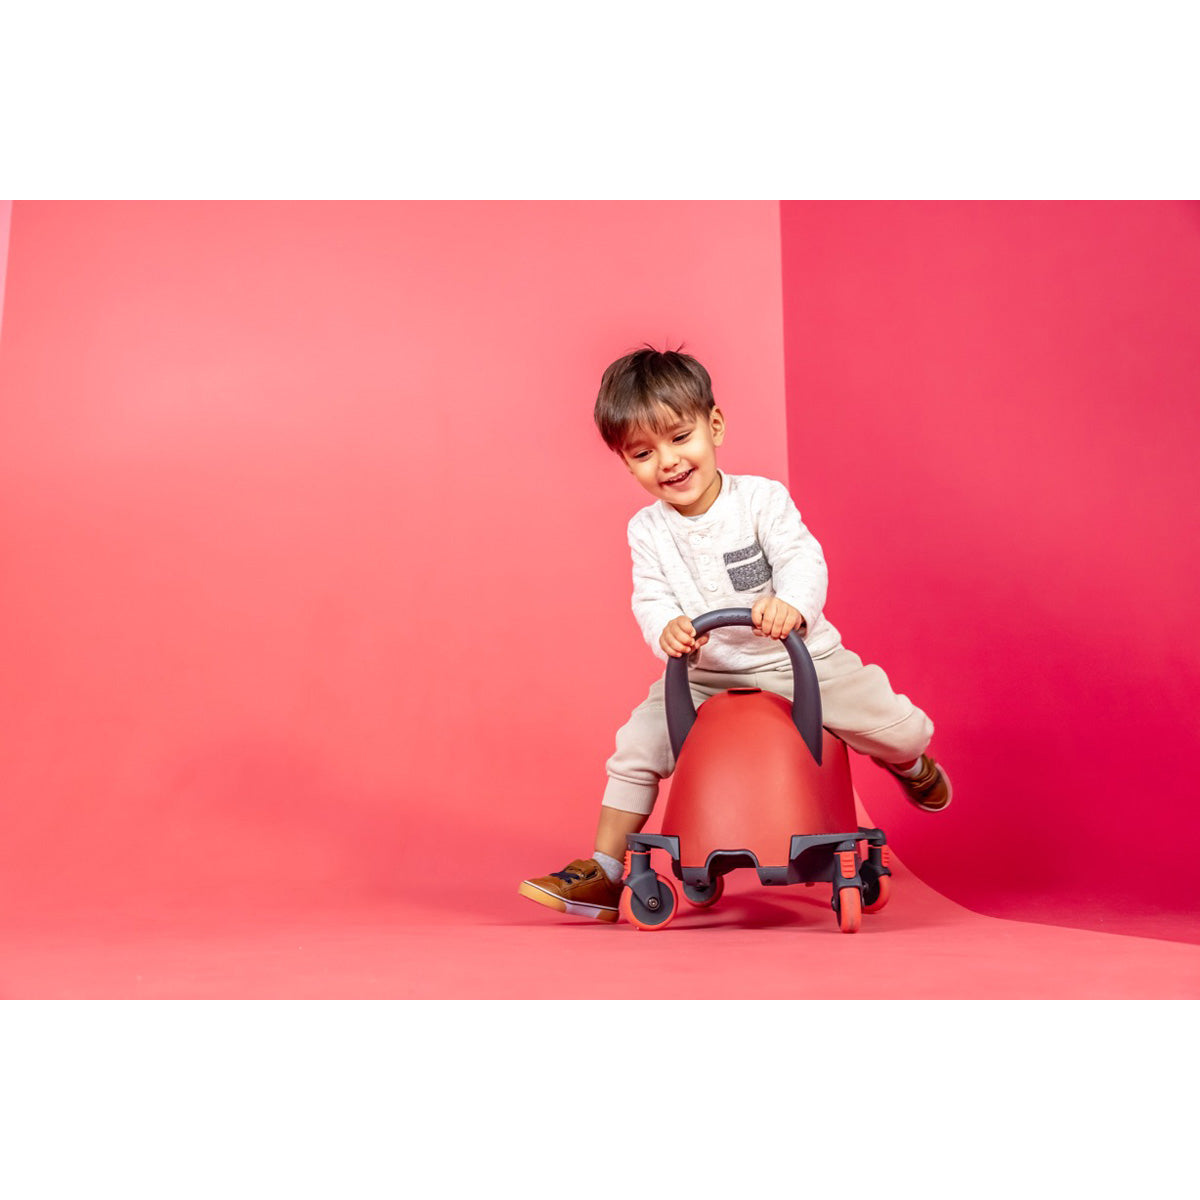 Yvolution Yglider Luna 5-in-1 Roller Rider - Der ultimative Begleiter für abenteuerlustige Kids! 🌟🌈